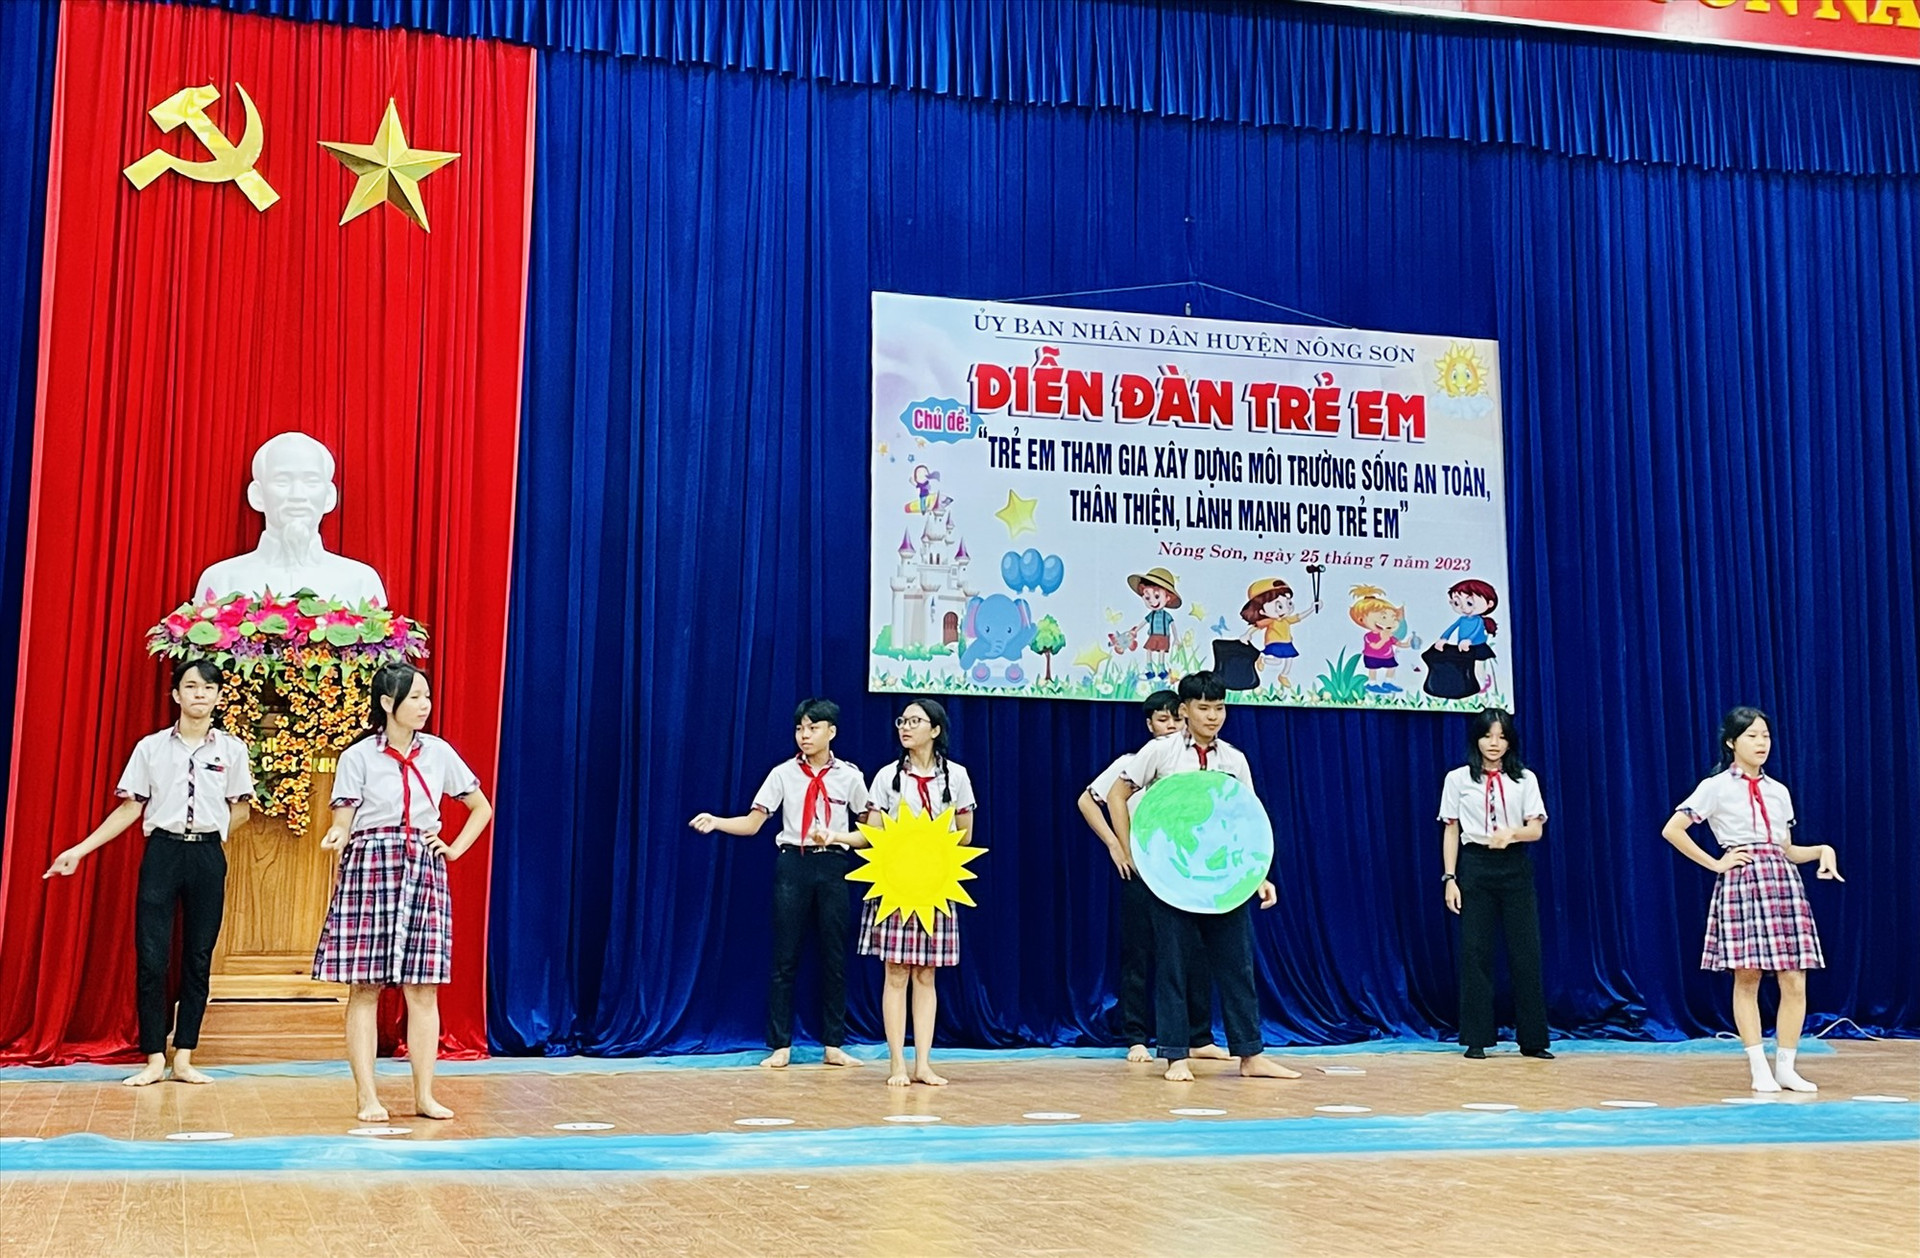 Nhiều thông điệp về trẻ em được gởi gắm bằng hình thức sân khấu hóa tại Diễn đàn trẻ em huyện Nông Sơn năm 2023. Ảnh: MINH TÂM